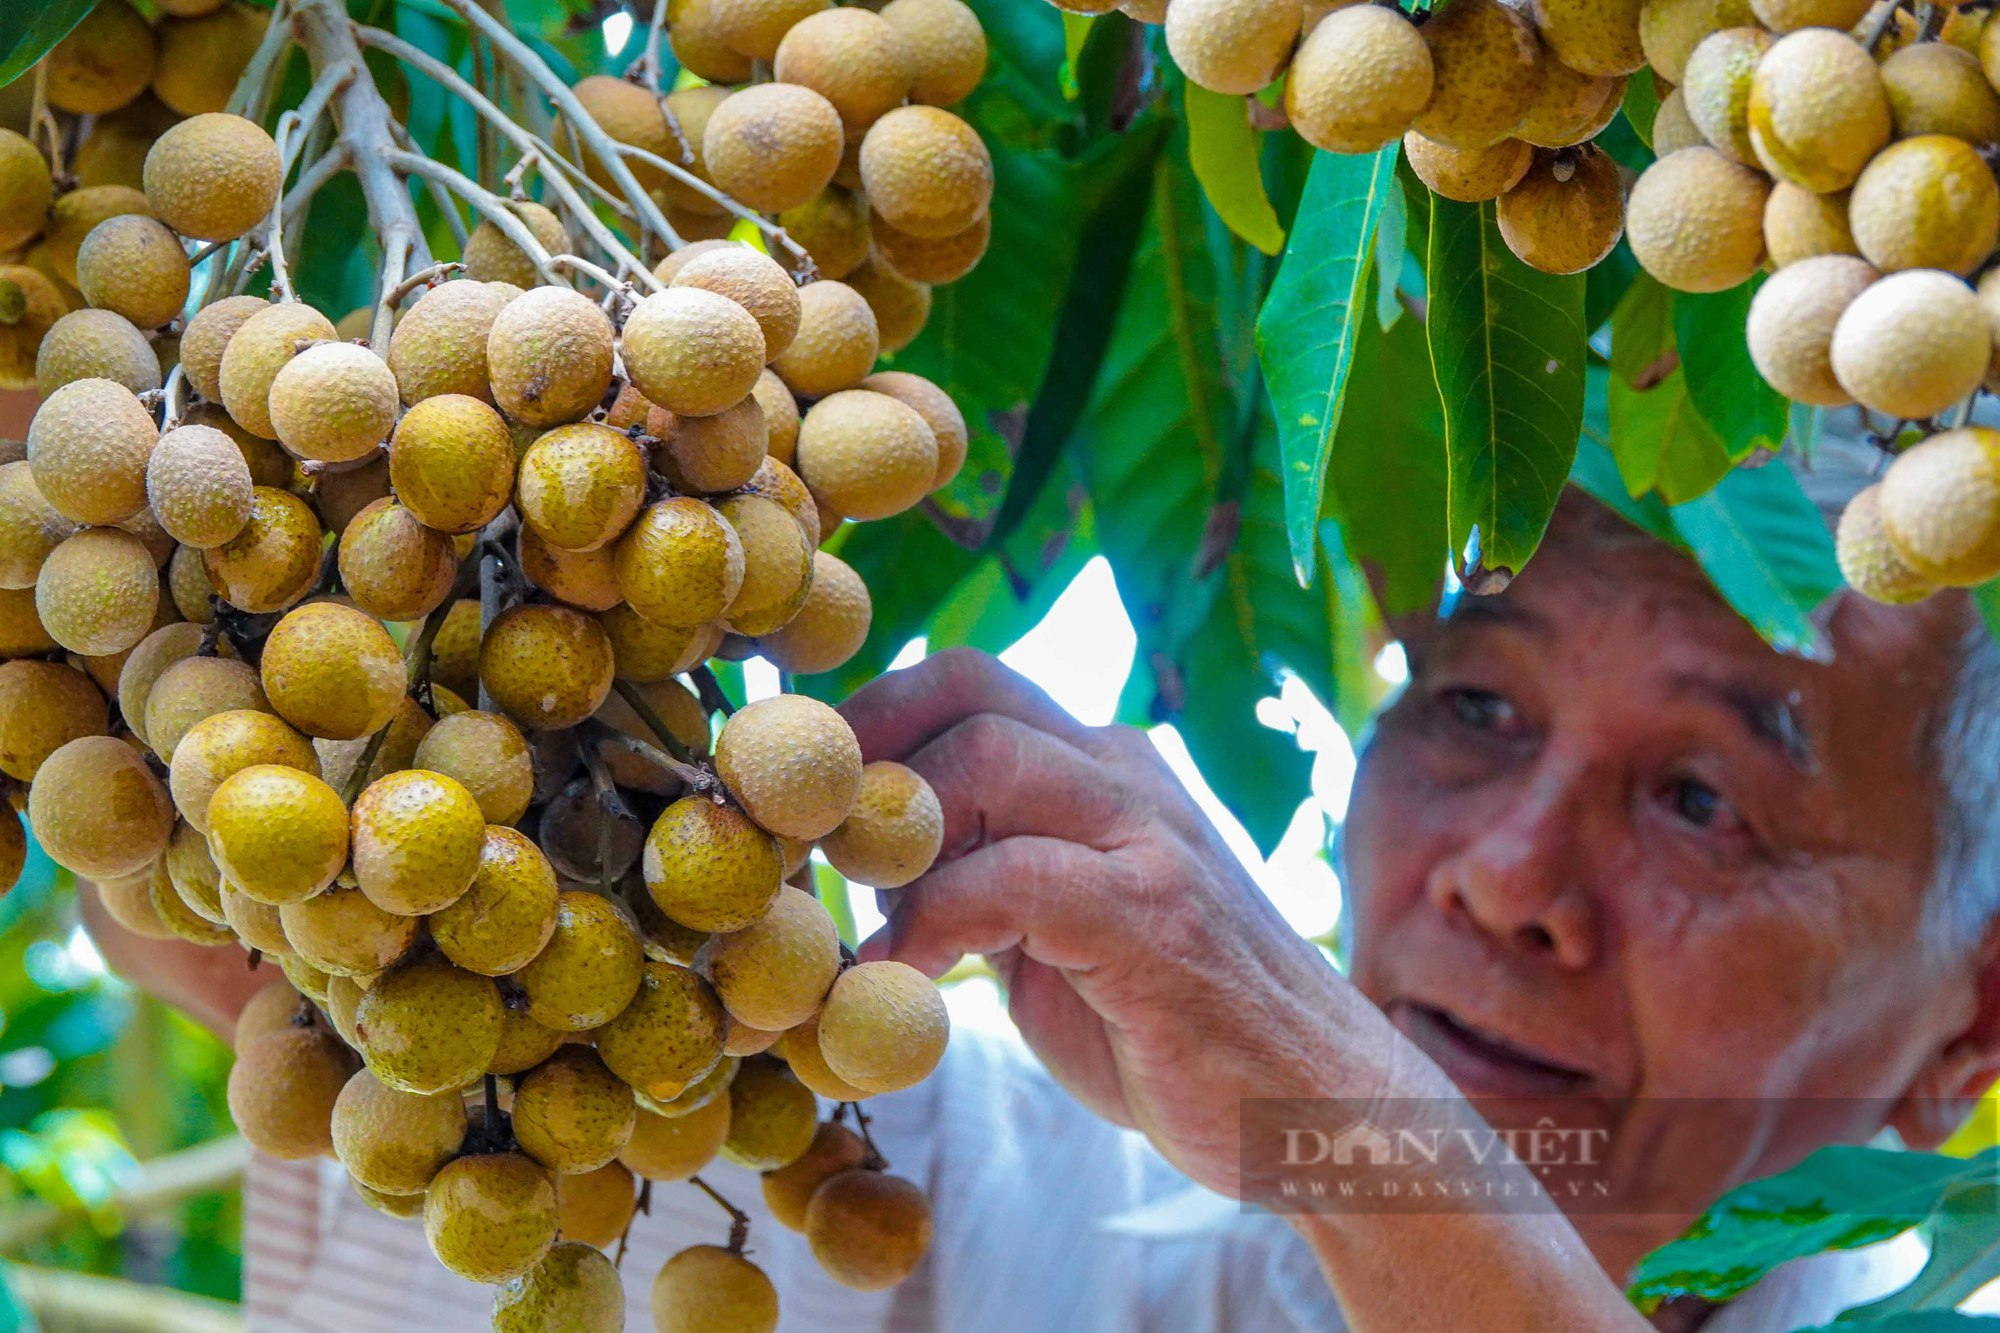 Lão nông ở miền Tây lai tạo ra giống nhãn mới, cho trái từng chùm nặng từ 3 - 4 kg, giá bán rất cao - Ảnh 3.